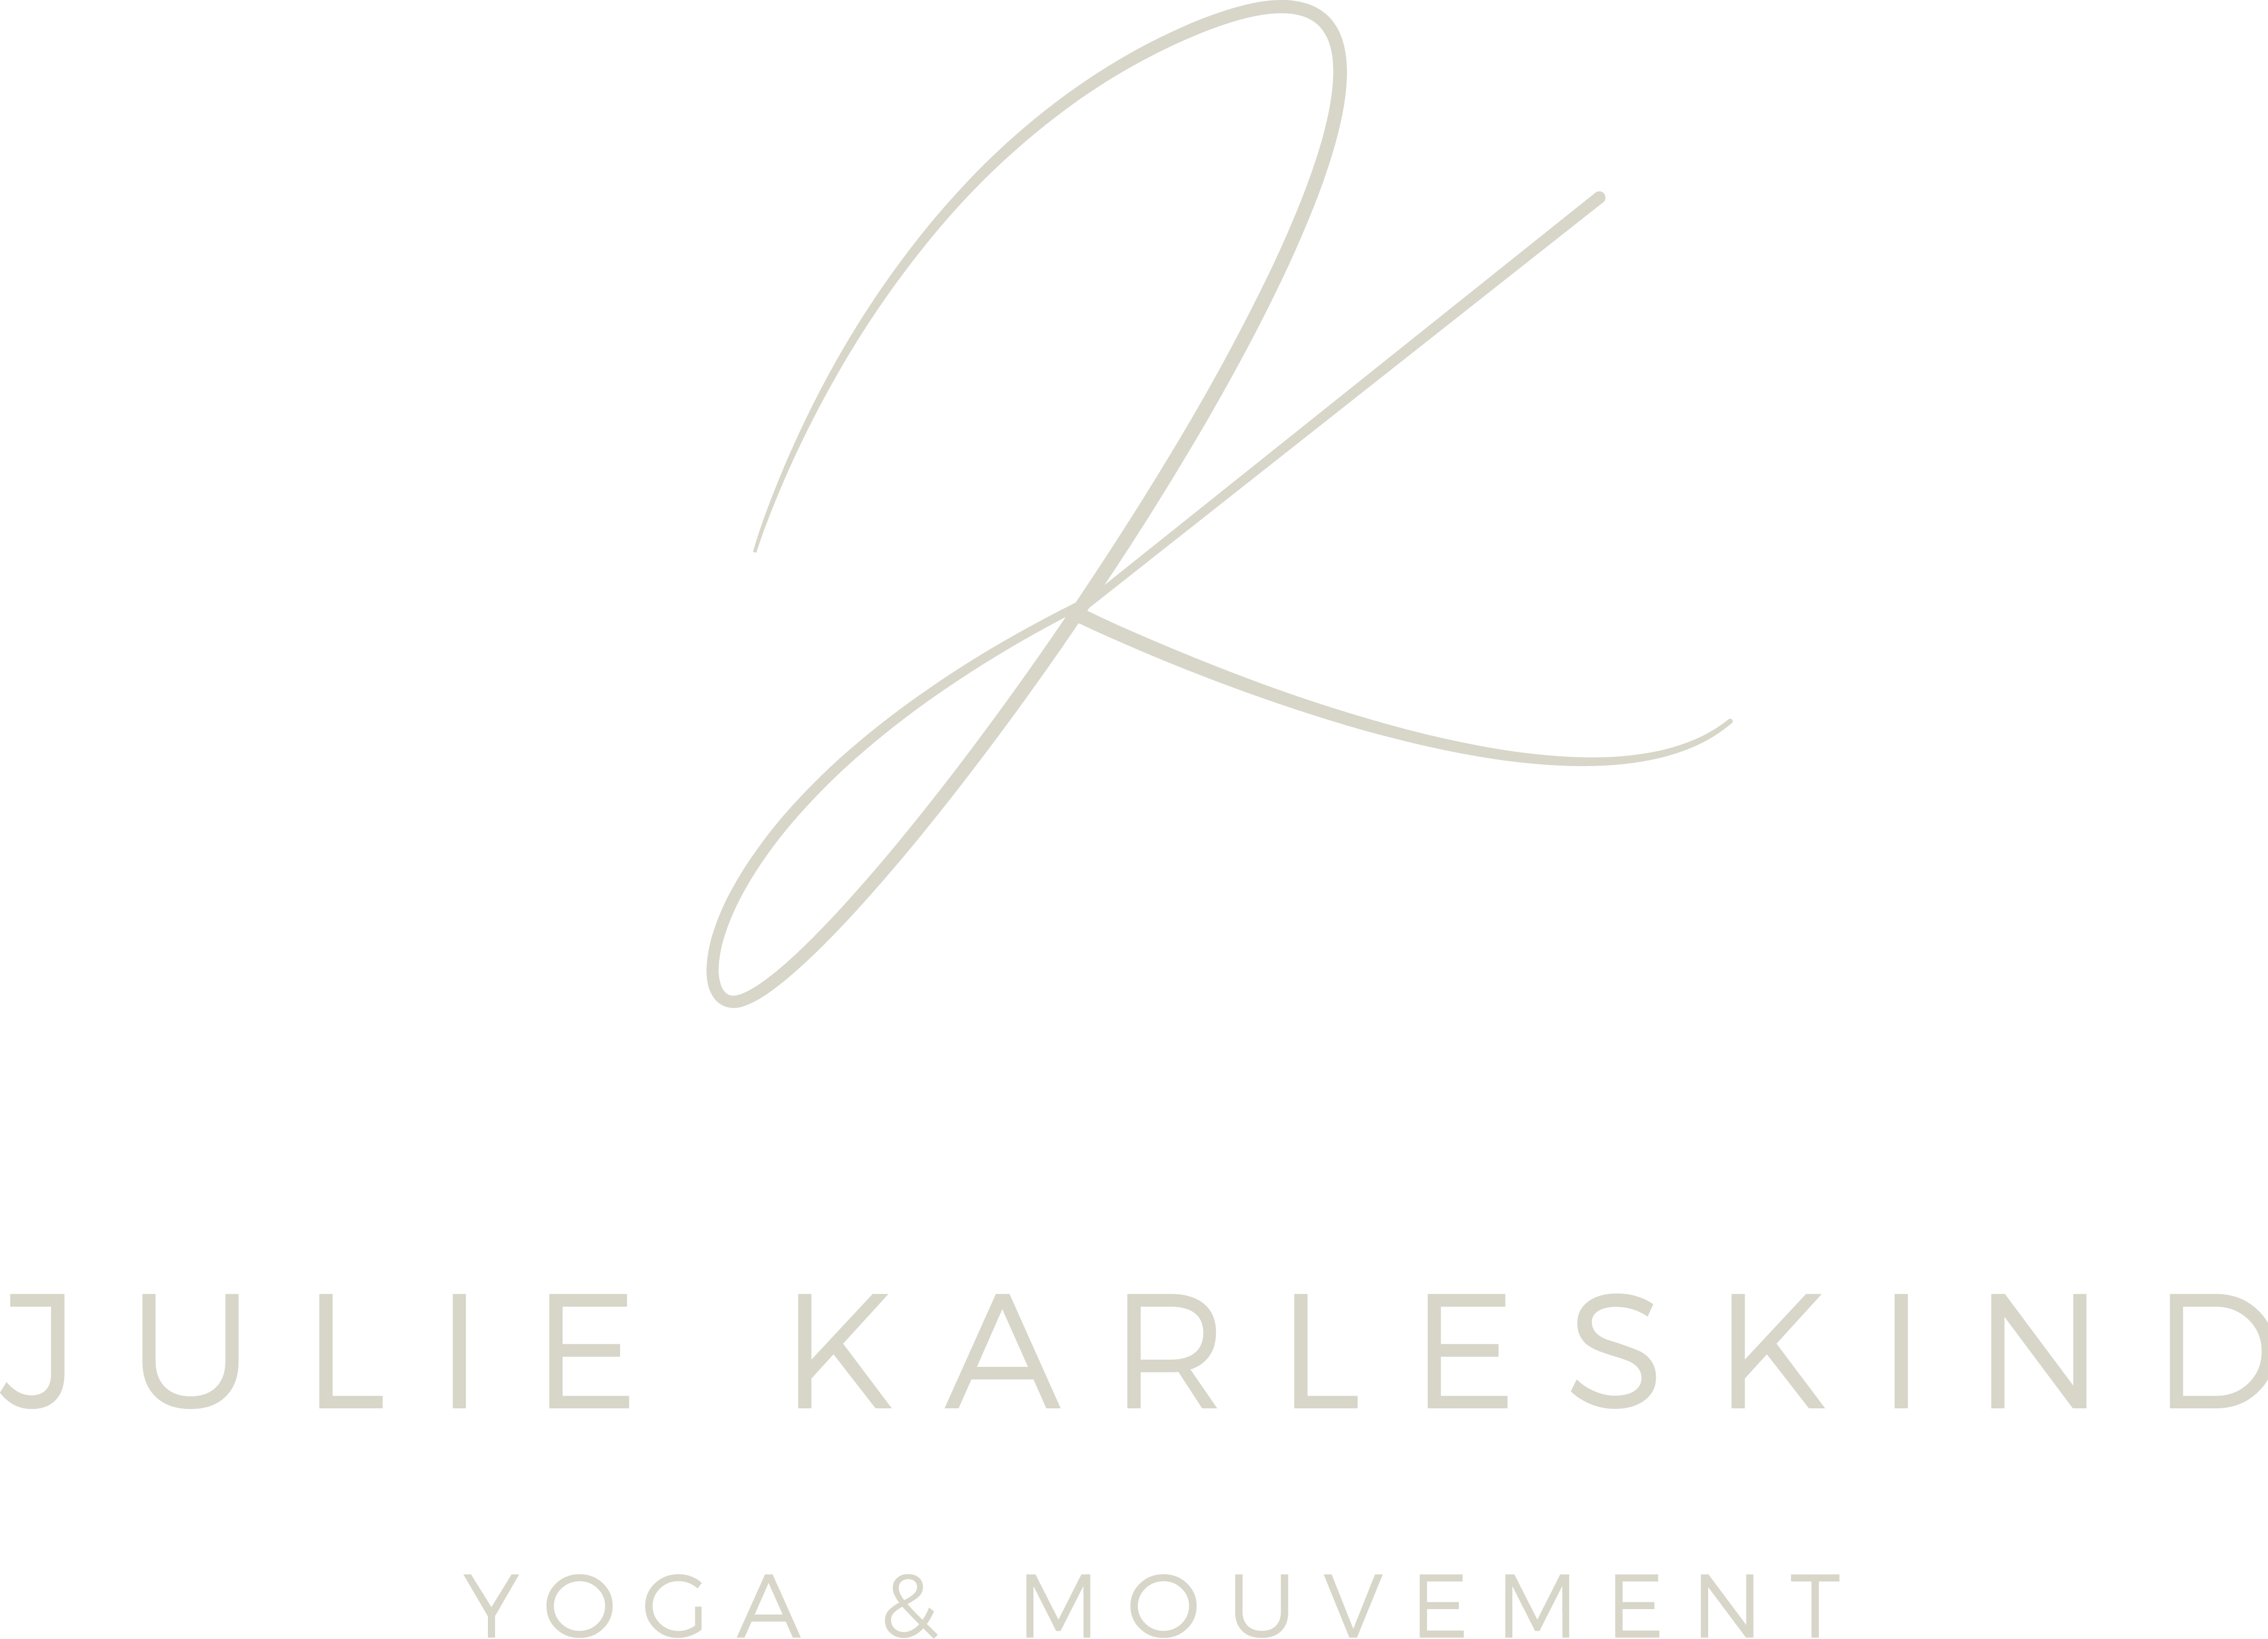 Julie Karleskind – Yoga & Mouvement